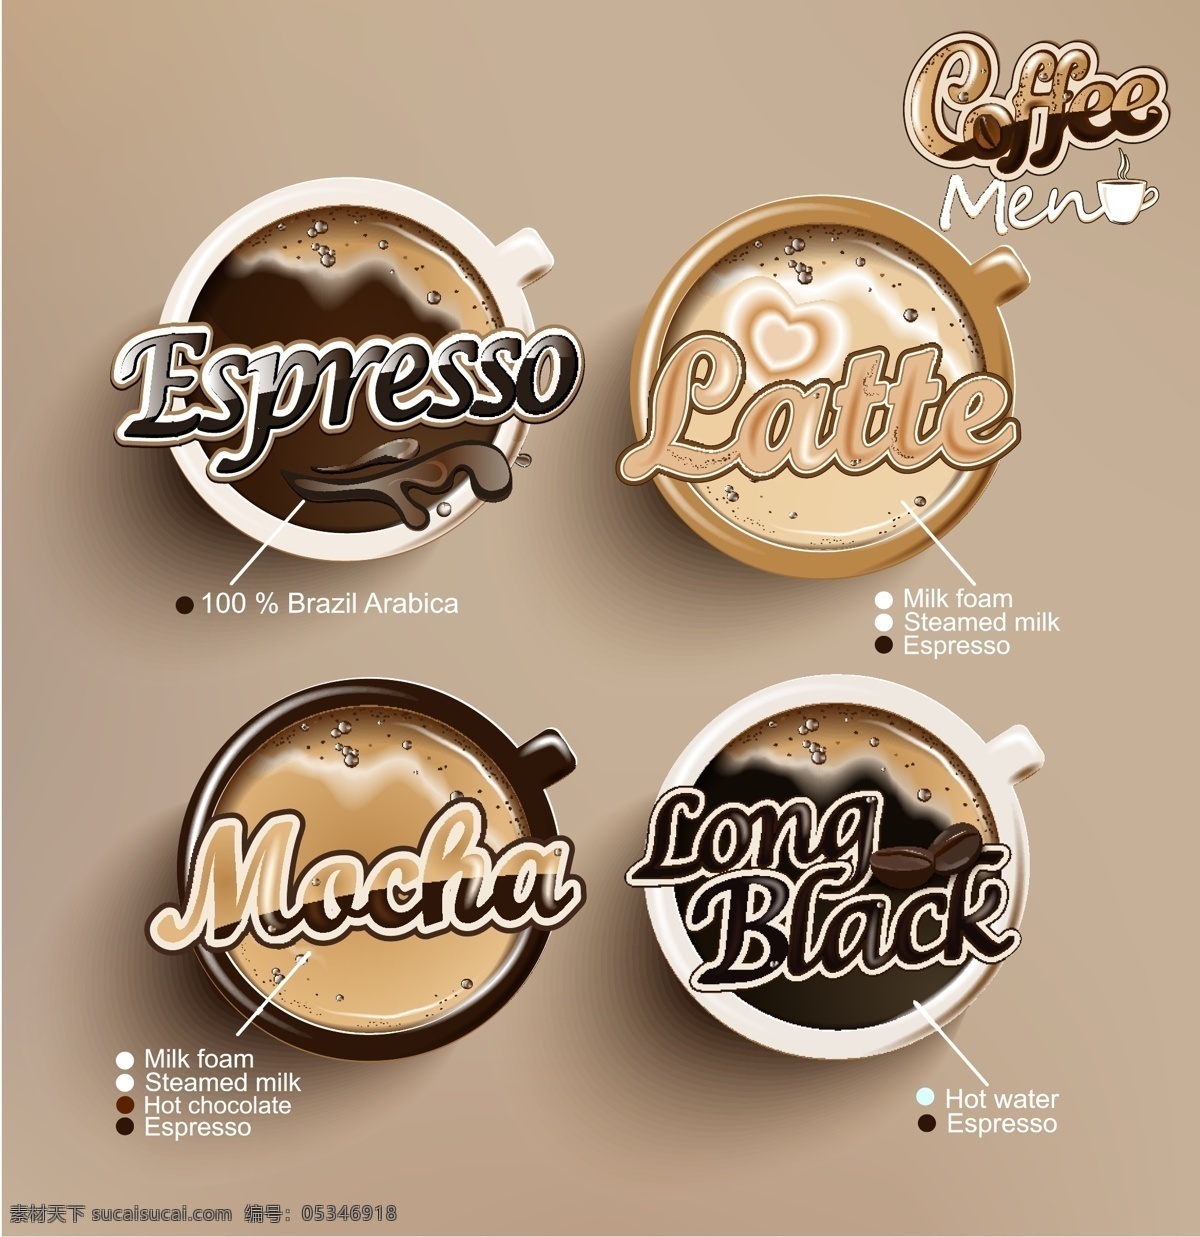 咖啡色 香 浓 咖啡 商标设计 矢量 咖啡商标设计 咖啡标签设计 香浓 飘香 时尚 徽标徽章标帖 标志图标 矢量素材 黄色